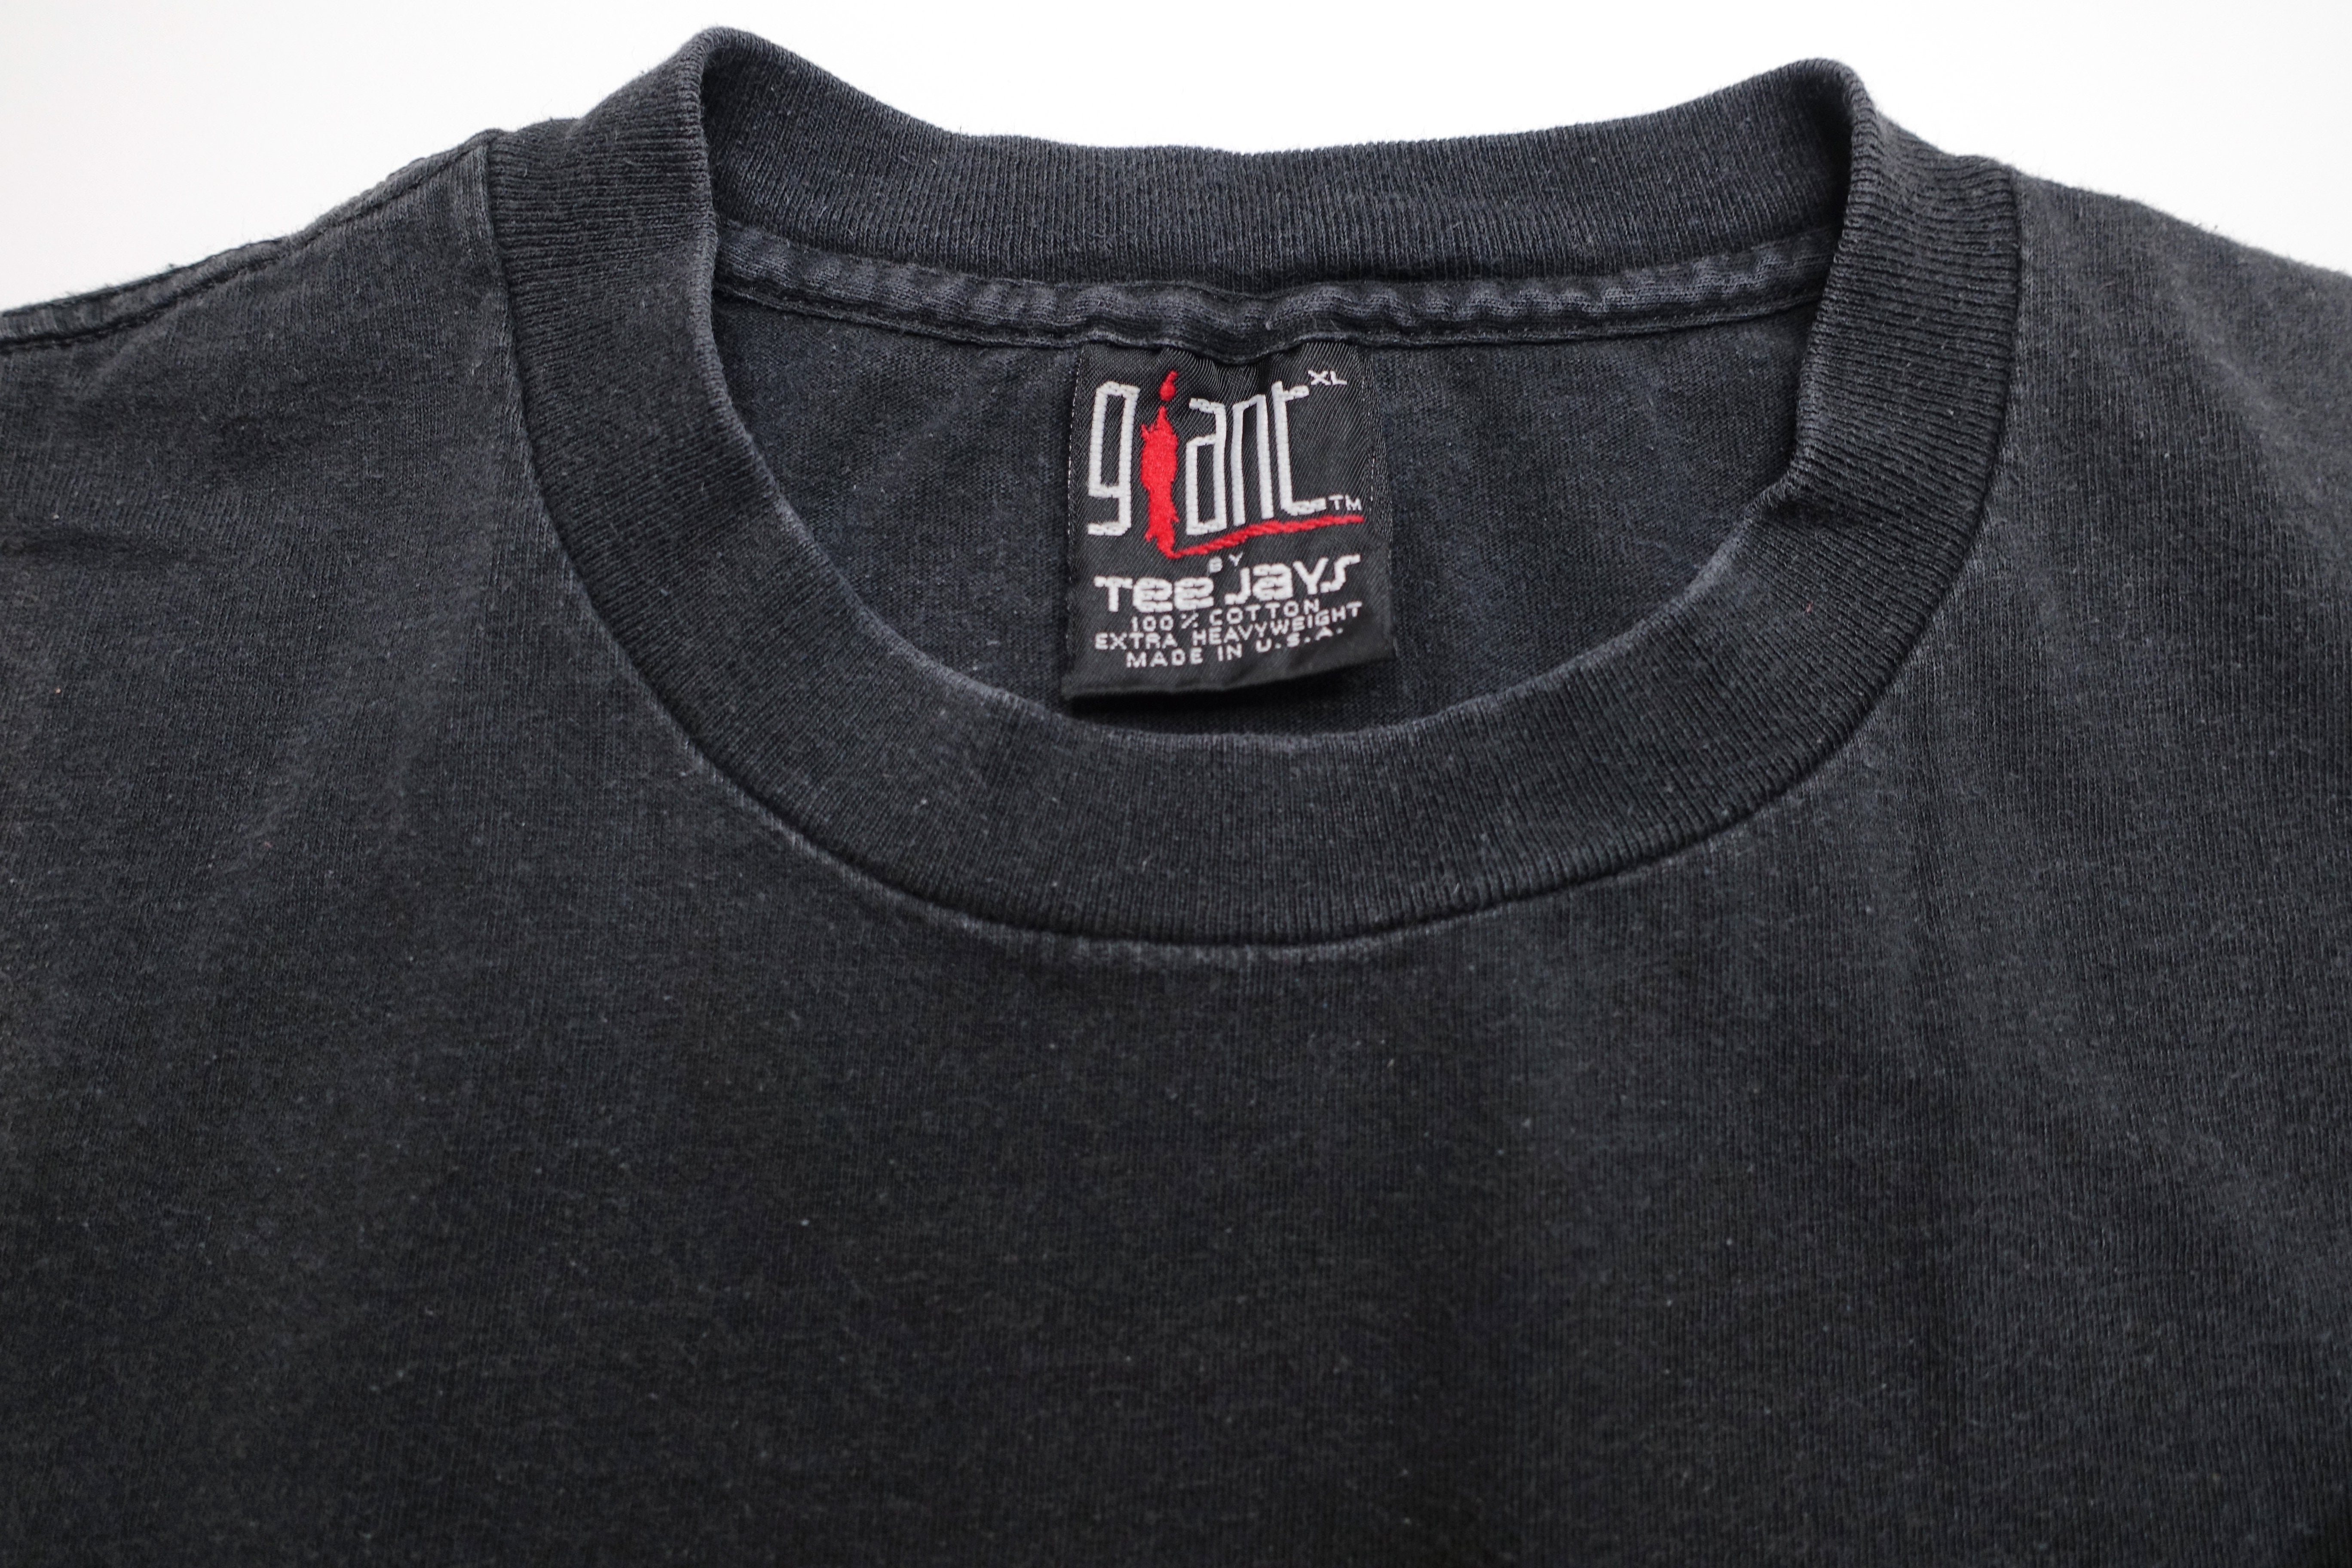 Goldfinger - S/T 1996 Tour Shirt (Black) Size XL